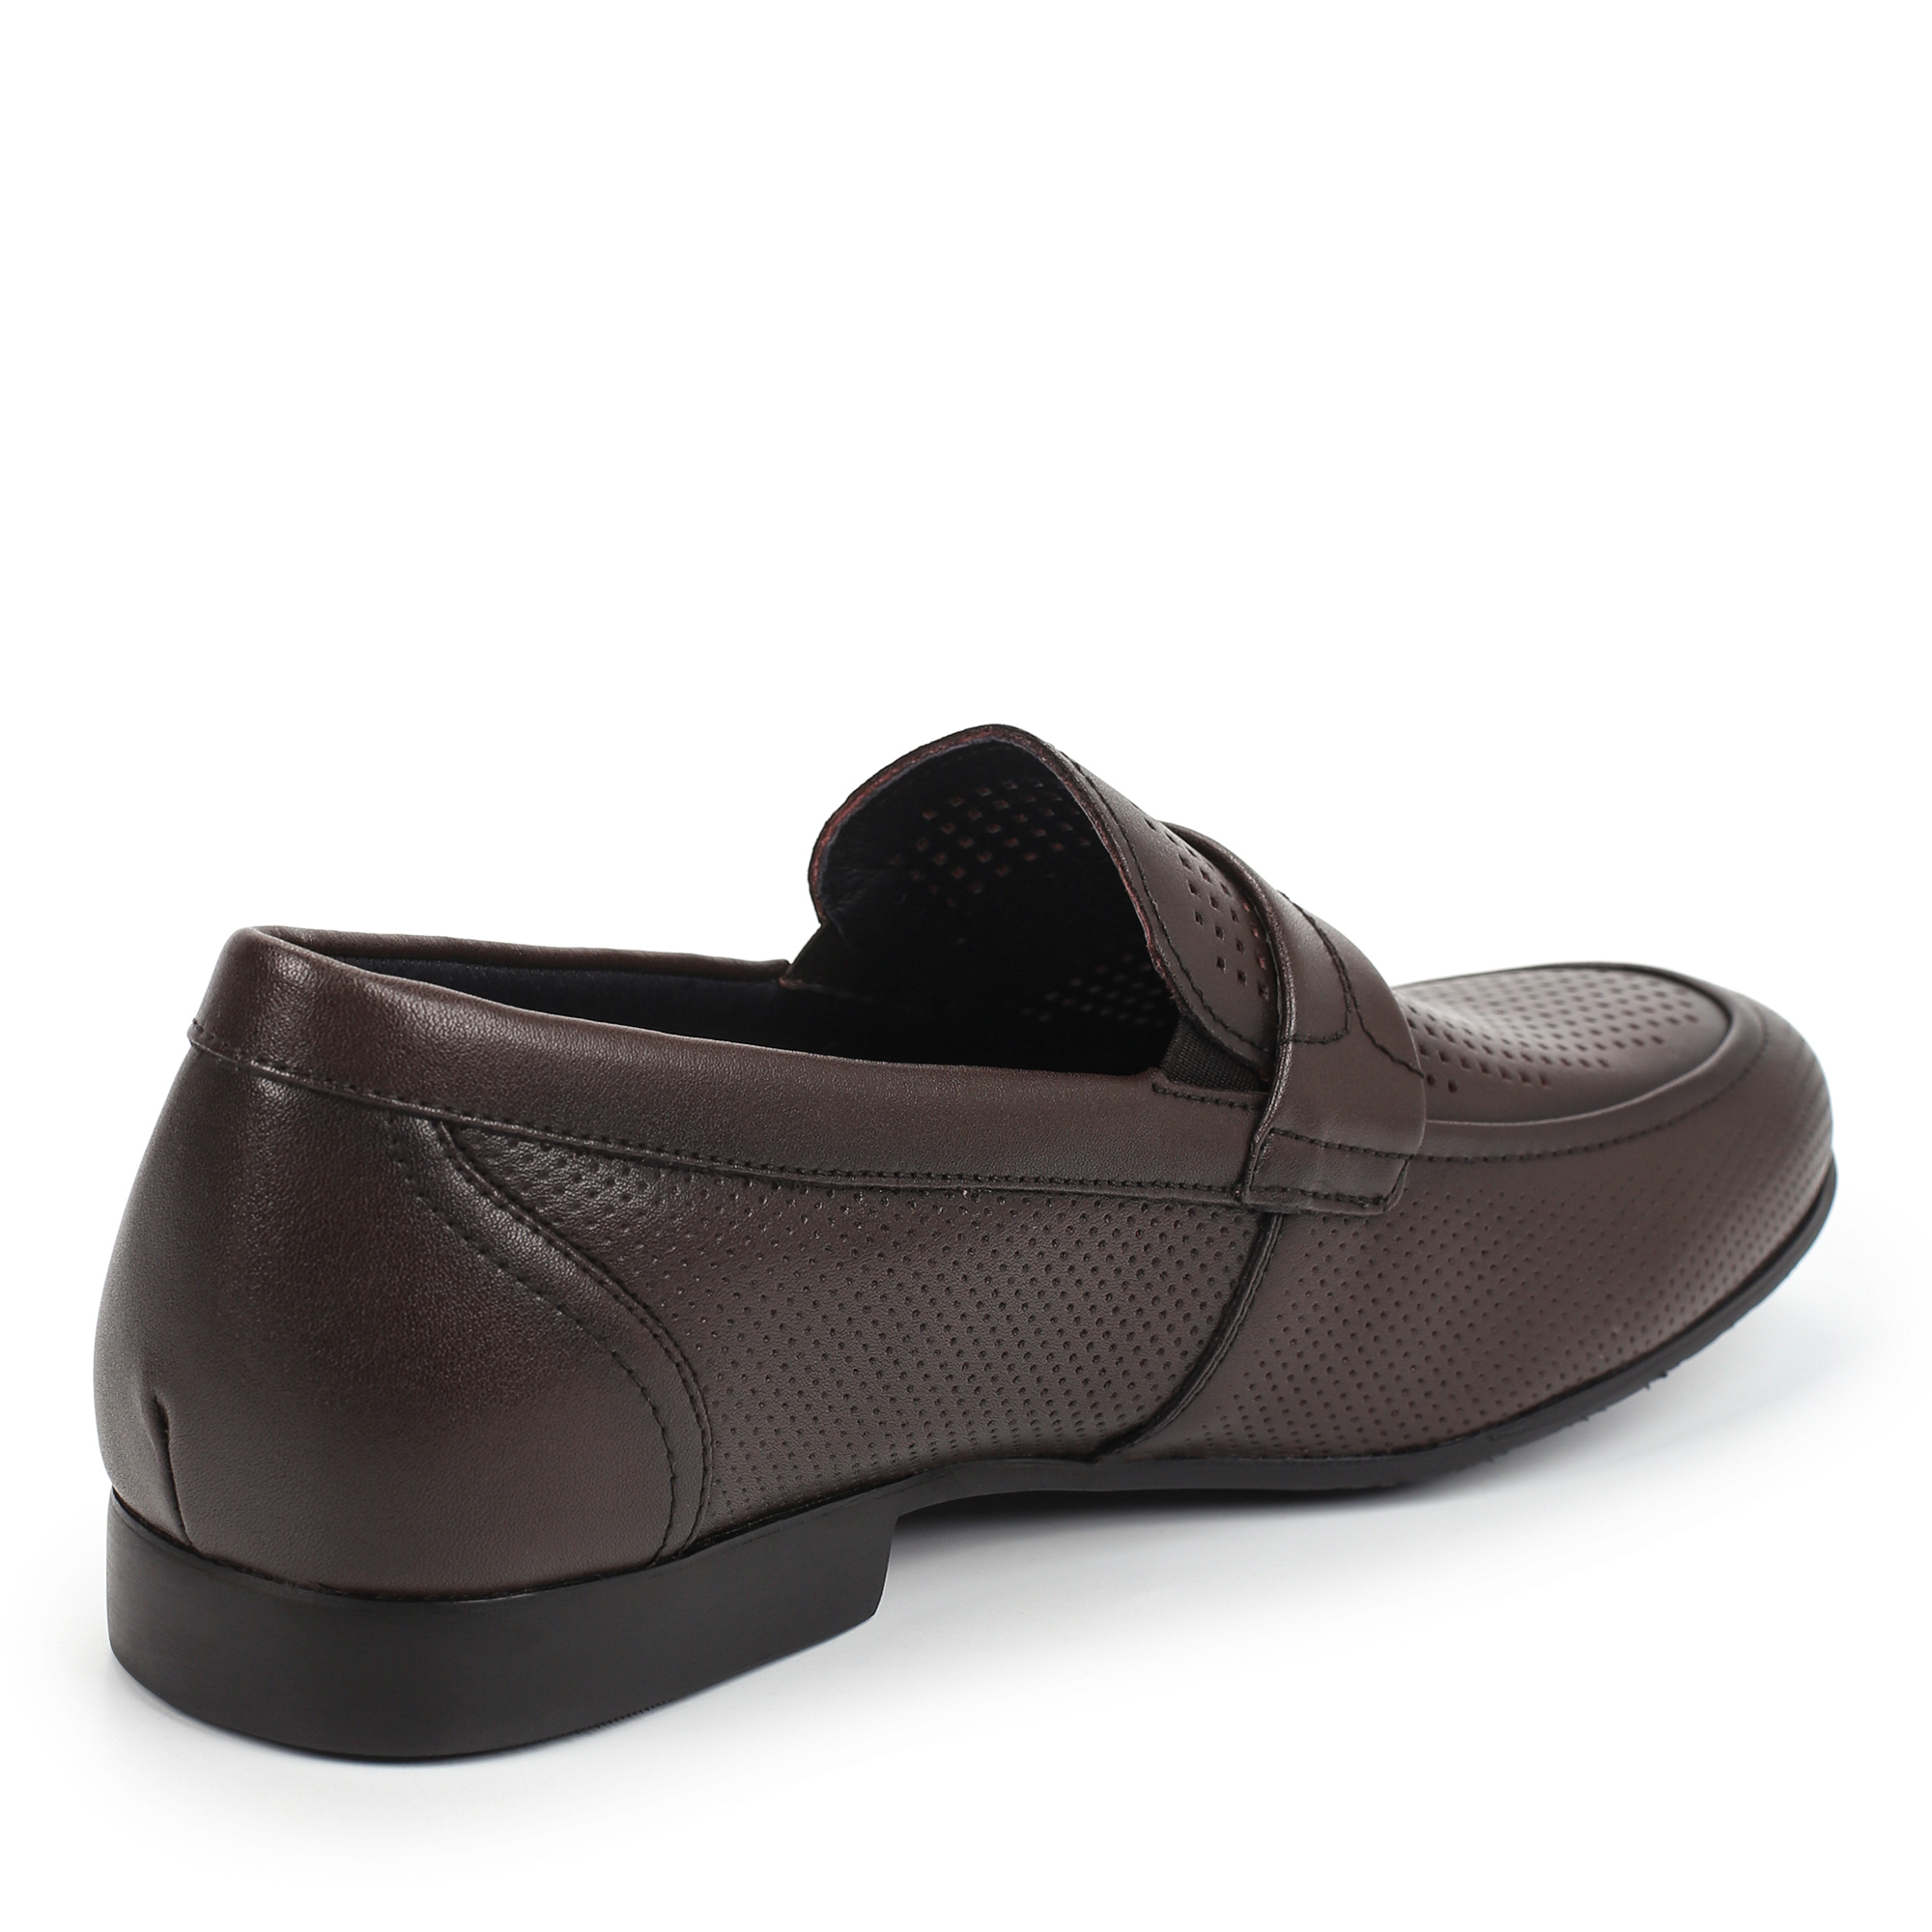 Туфли/полуботинки Thomas Munz 058-115A-1609, цвет темно-коричневый, размер 41 - фото 3